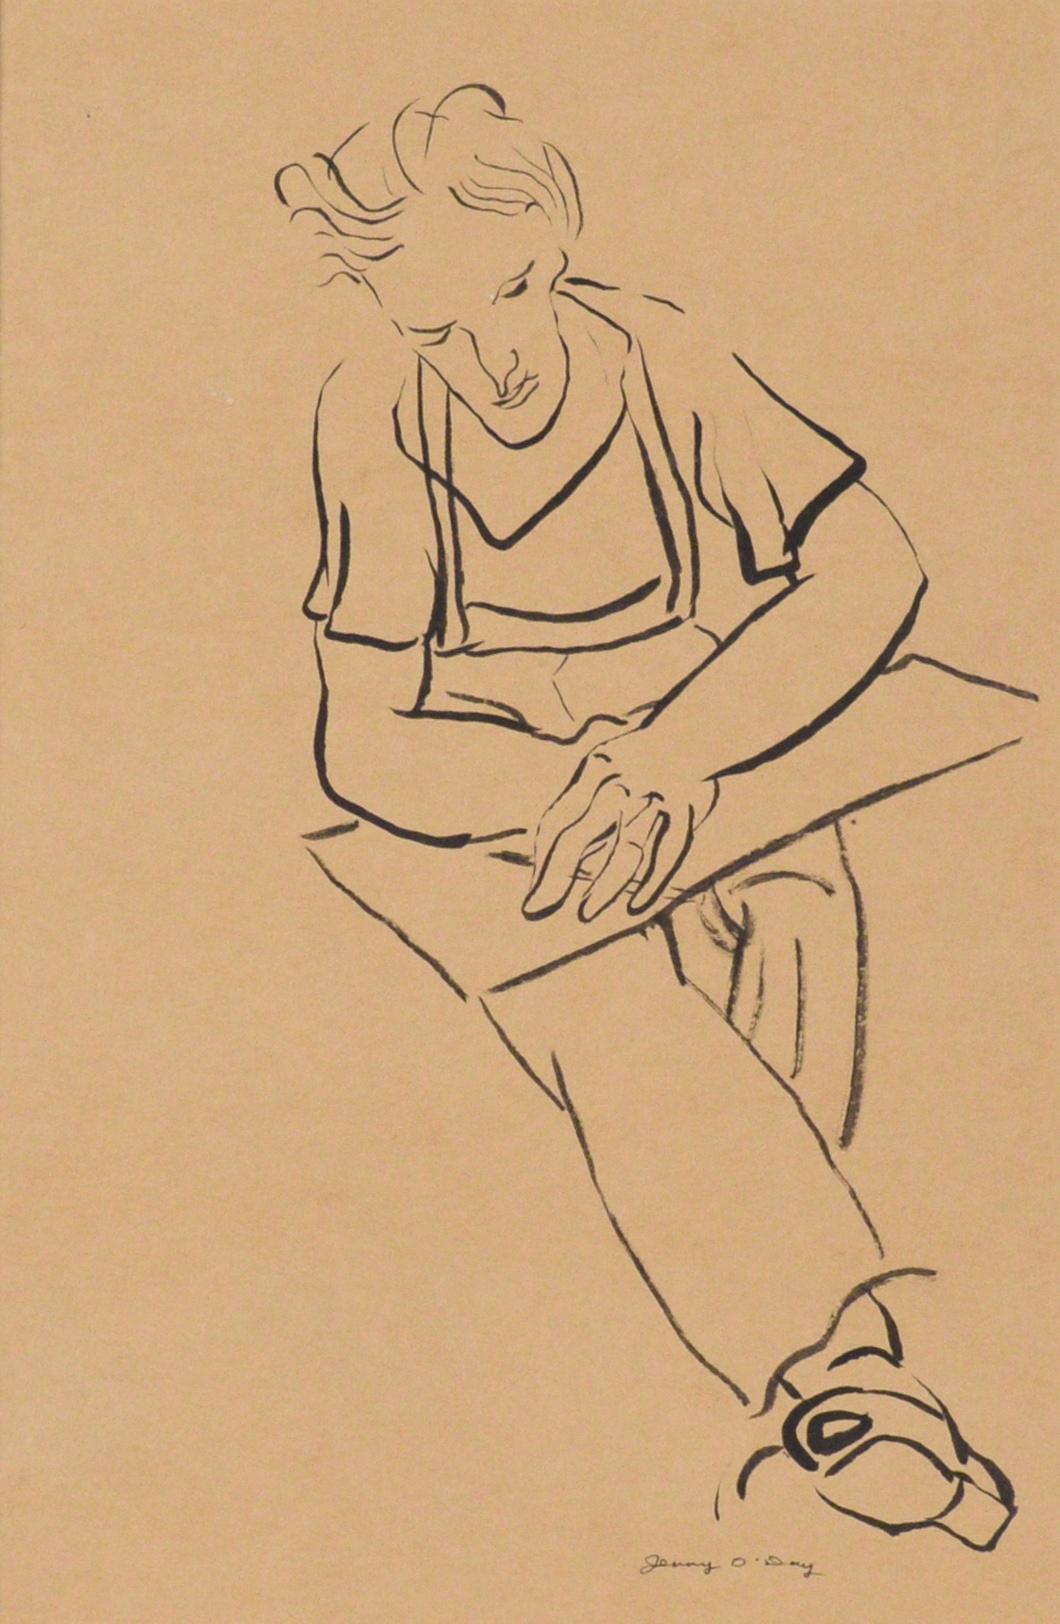 Porträtzeichnung eines Mannes an einem Schreibtisch in Indien, Tinte auf hellbraunem Papier – Art von Jerry O'Day